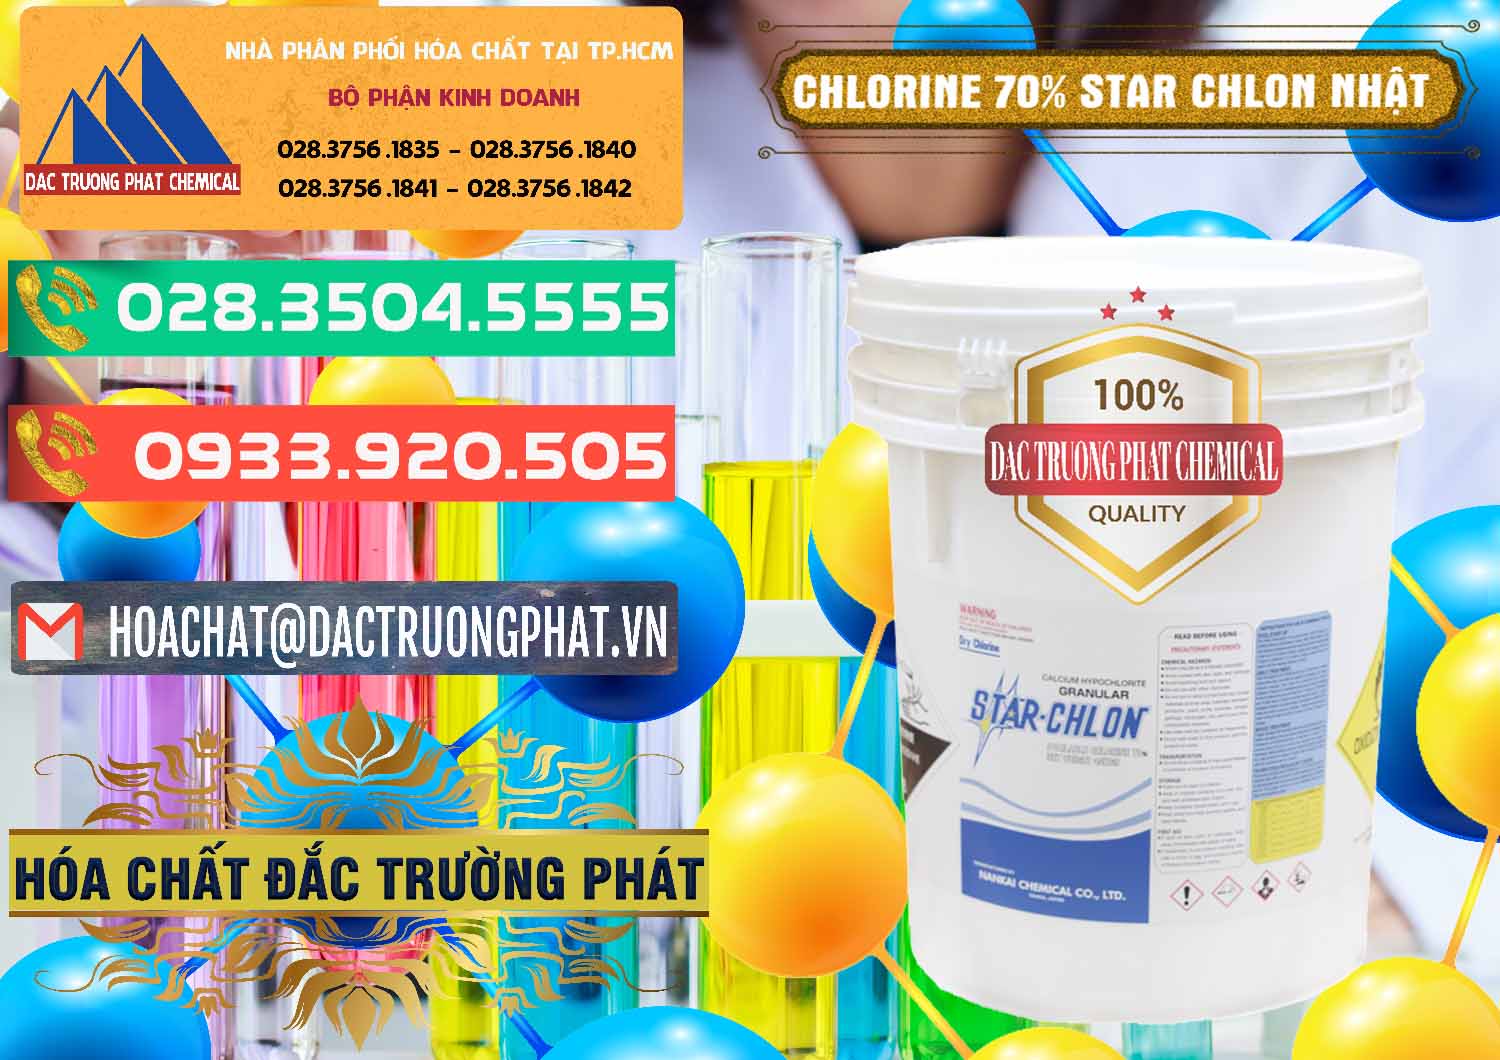 Cty bán và cung cấp Clorin – Chlorine 70% Star Chlon Nhật Bản Japan - 0243 - Nhà cung ứng & phân phối hóa chất tại TP.HCM - congtyhoachat.com.vn